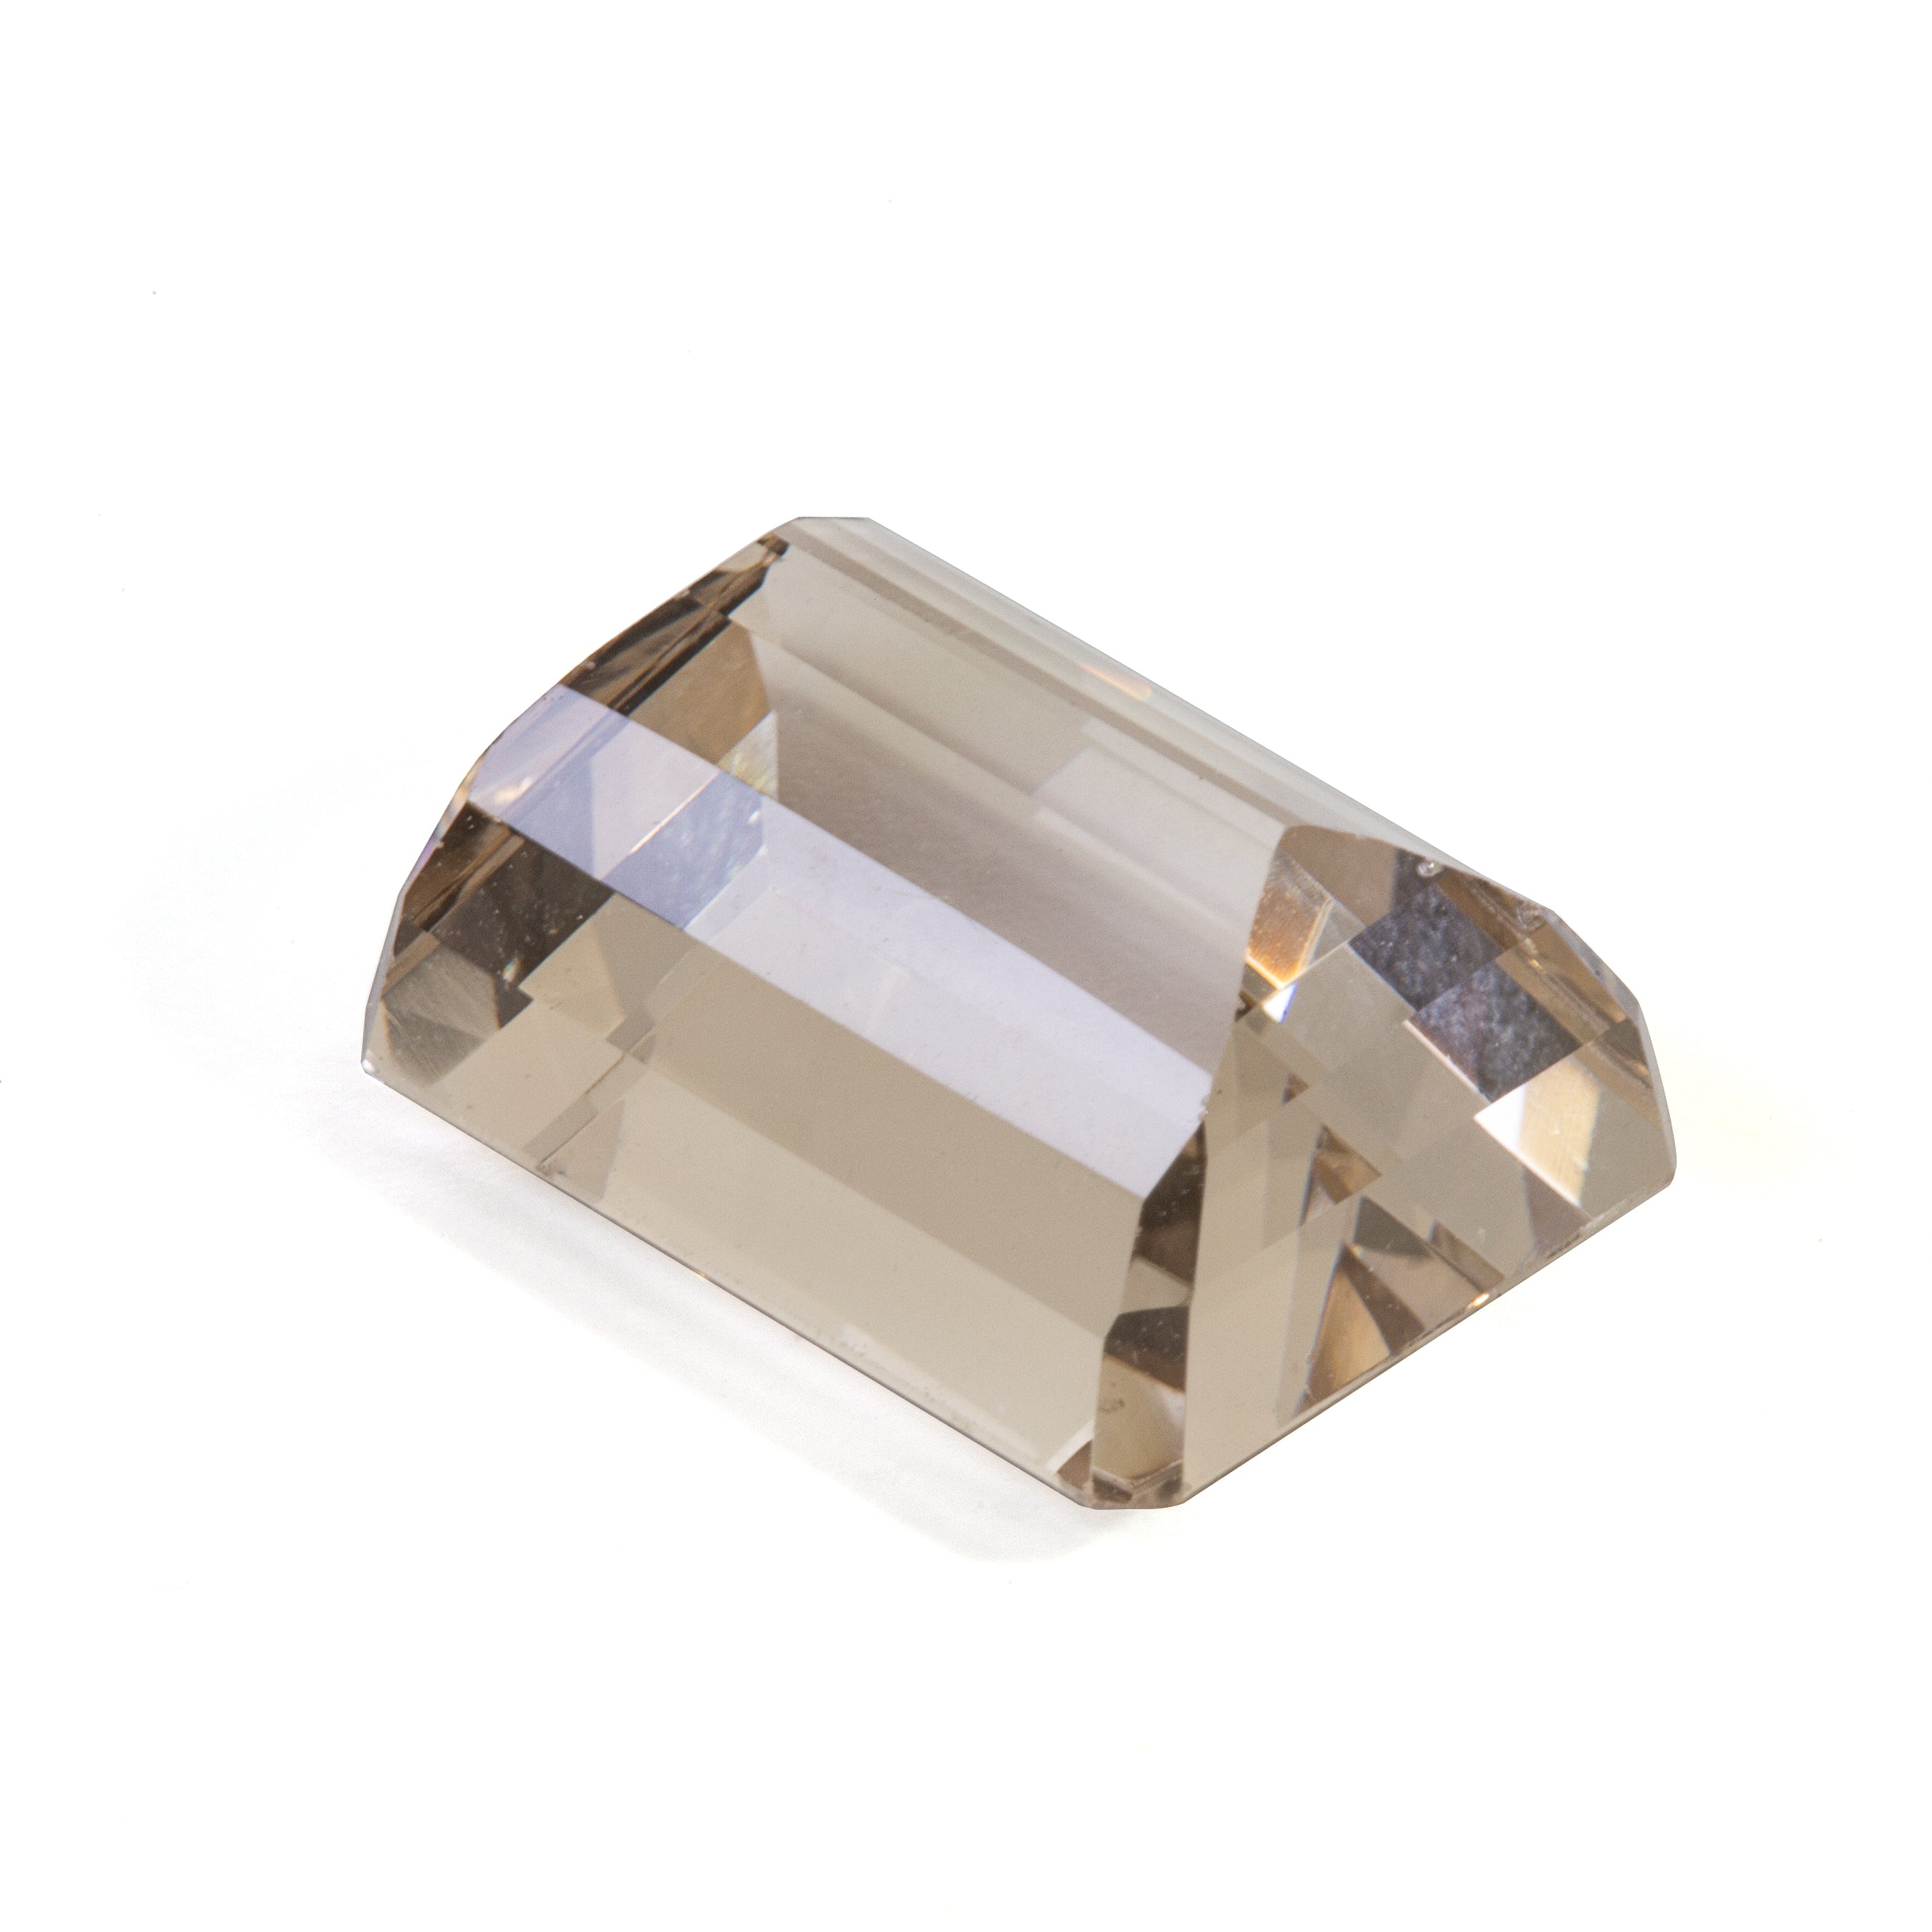 Beige Topaz 20.96 carat Faceted Gemstone - 2-706 - Crystalarium